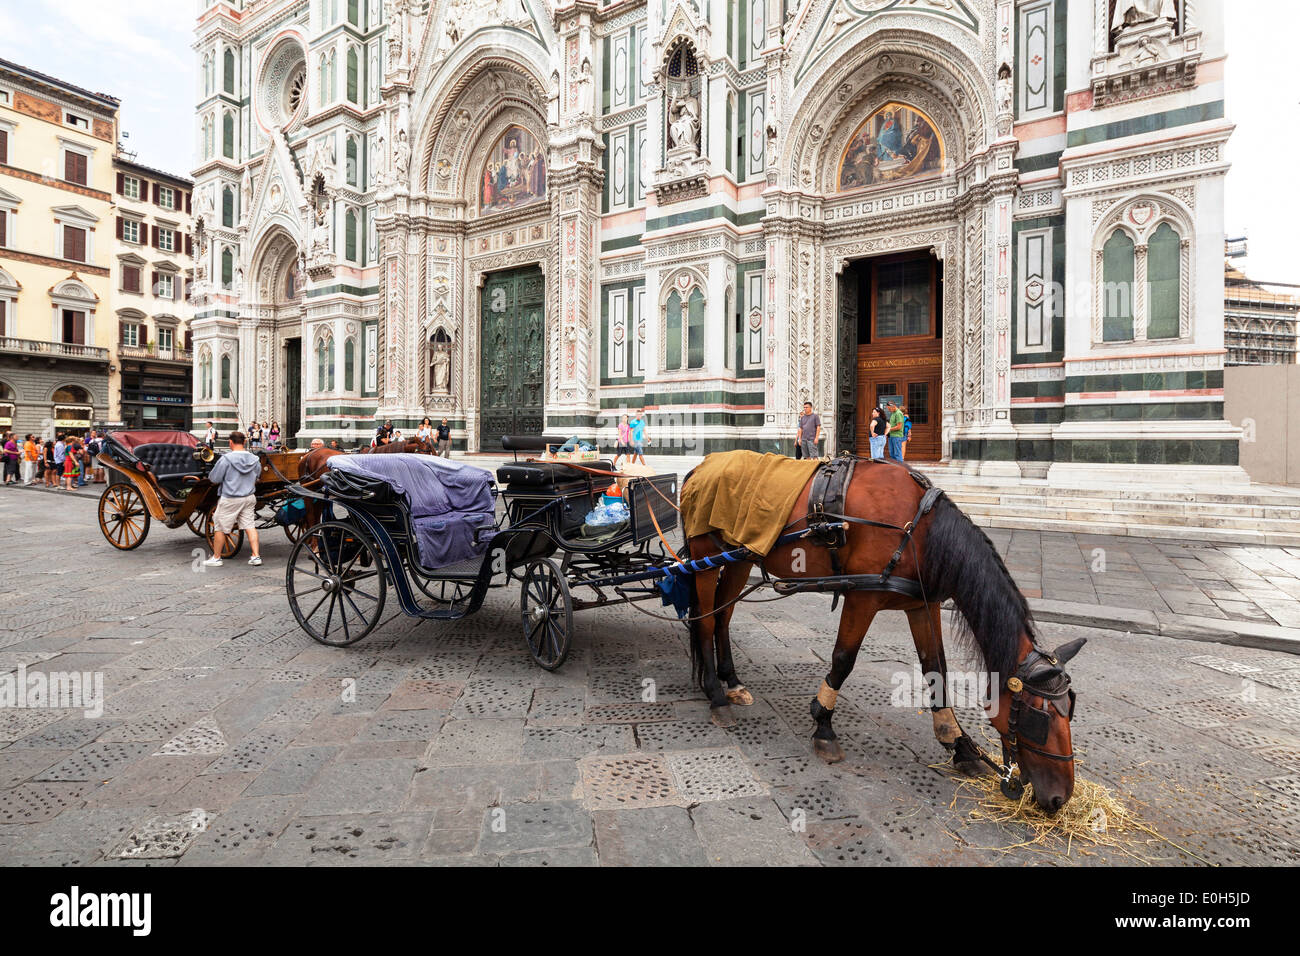 Balade en calèche en face de la cathédrale Santa Maria del Fiore, Florence, Toscane, Italie, Europe Banque D'Images